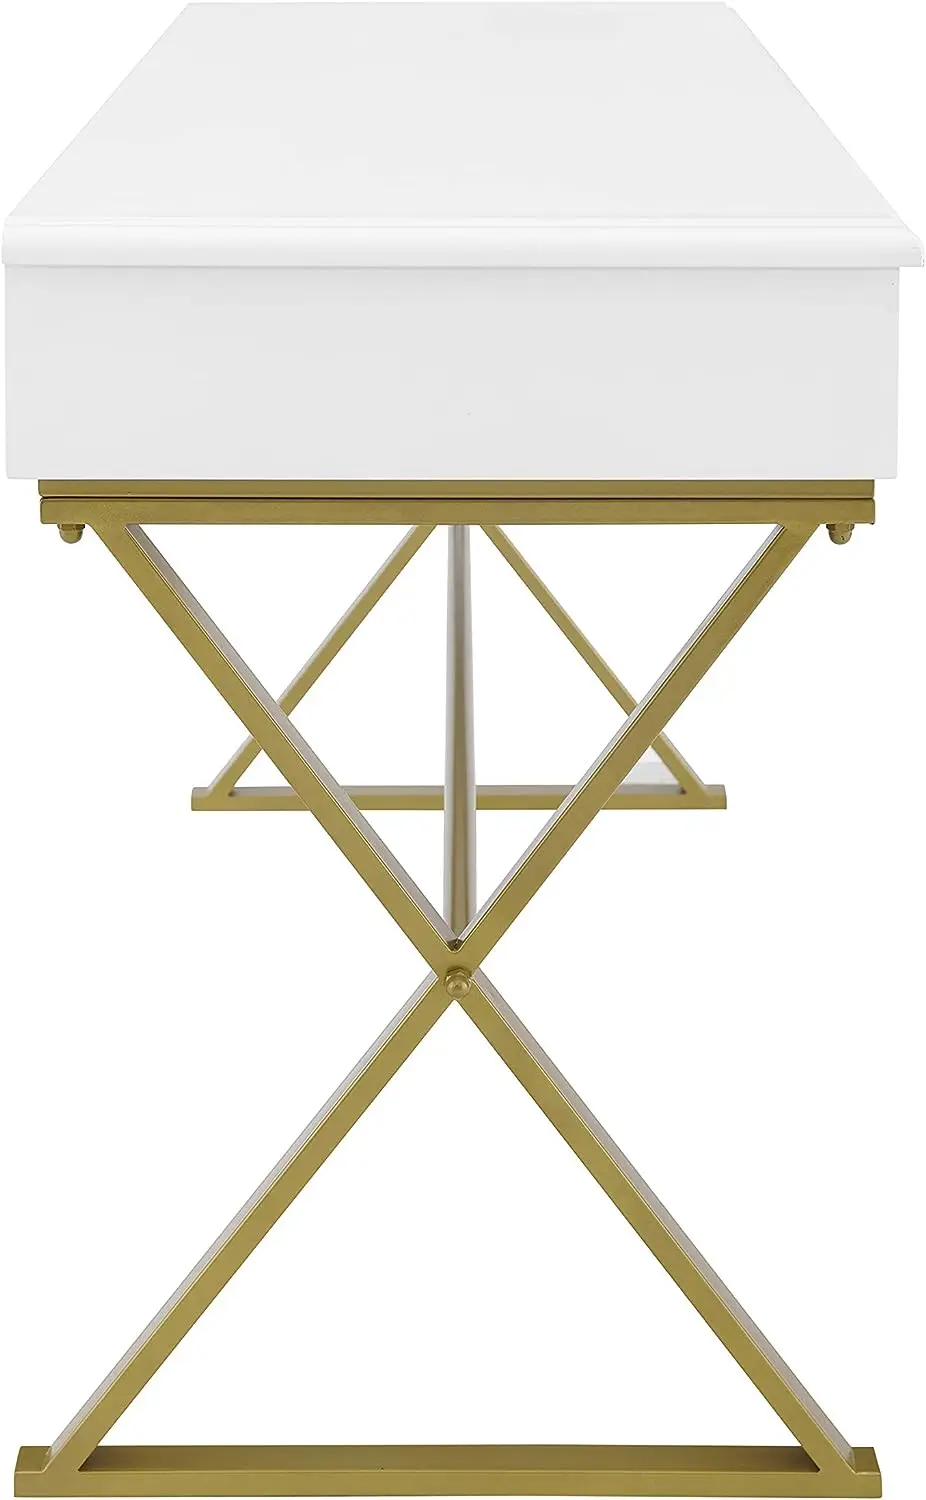 Товары для декора Harli с двумя выдвижными ящиками, белый стол2